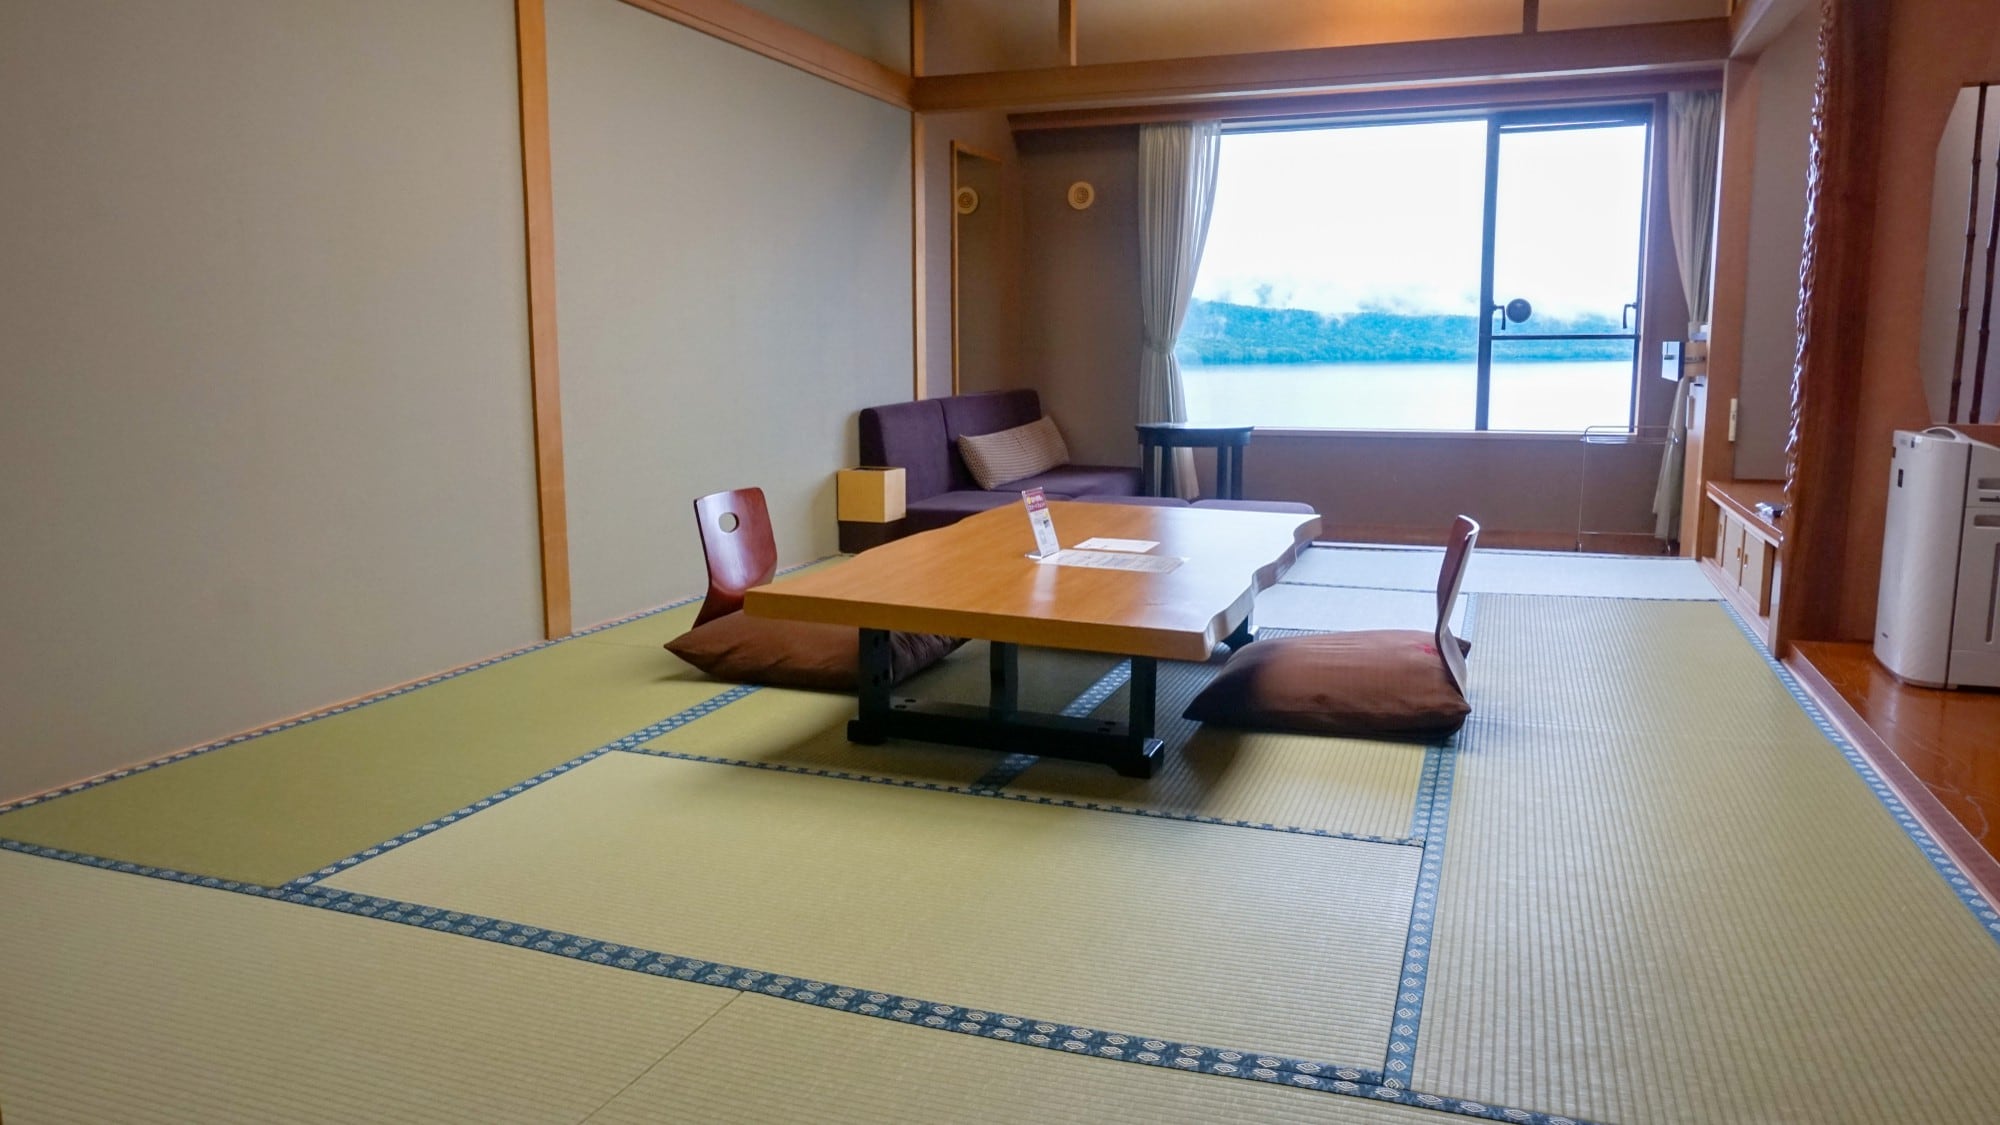 [ริมทะเลสาบ] ห้องสไตล์ญี่ปุ่น (มีอ่างอาบน้ำ) / ห้องสไตล์ญี่ปุ่นที่ยืดขาได้ผ่อนคลาย (ภาพ)